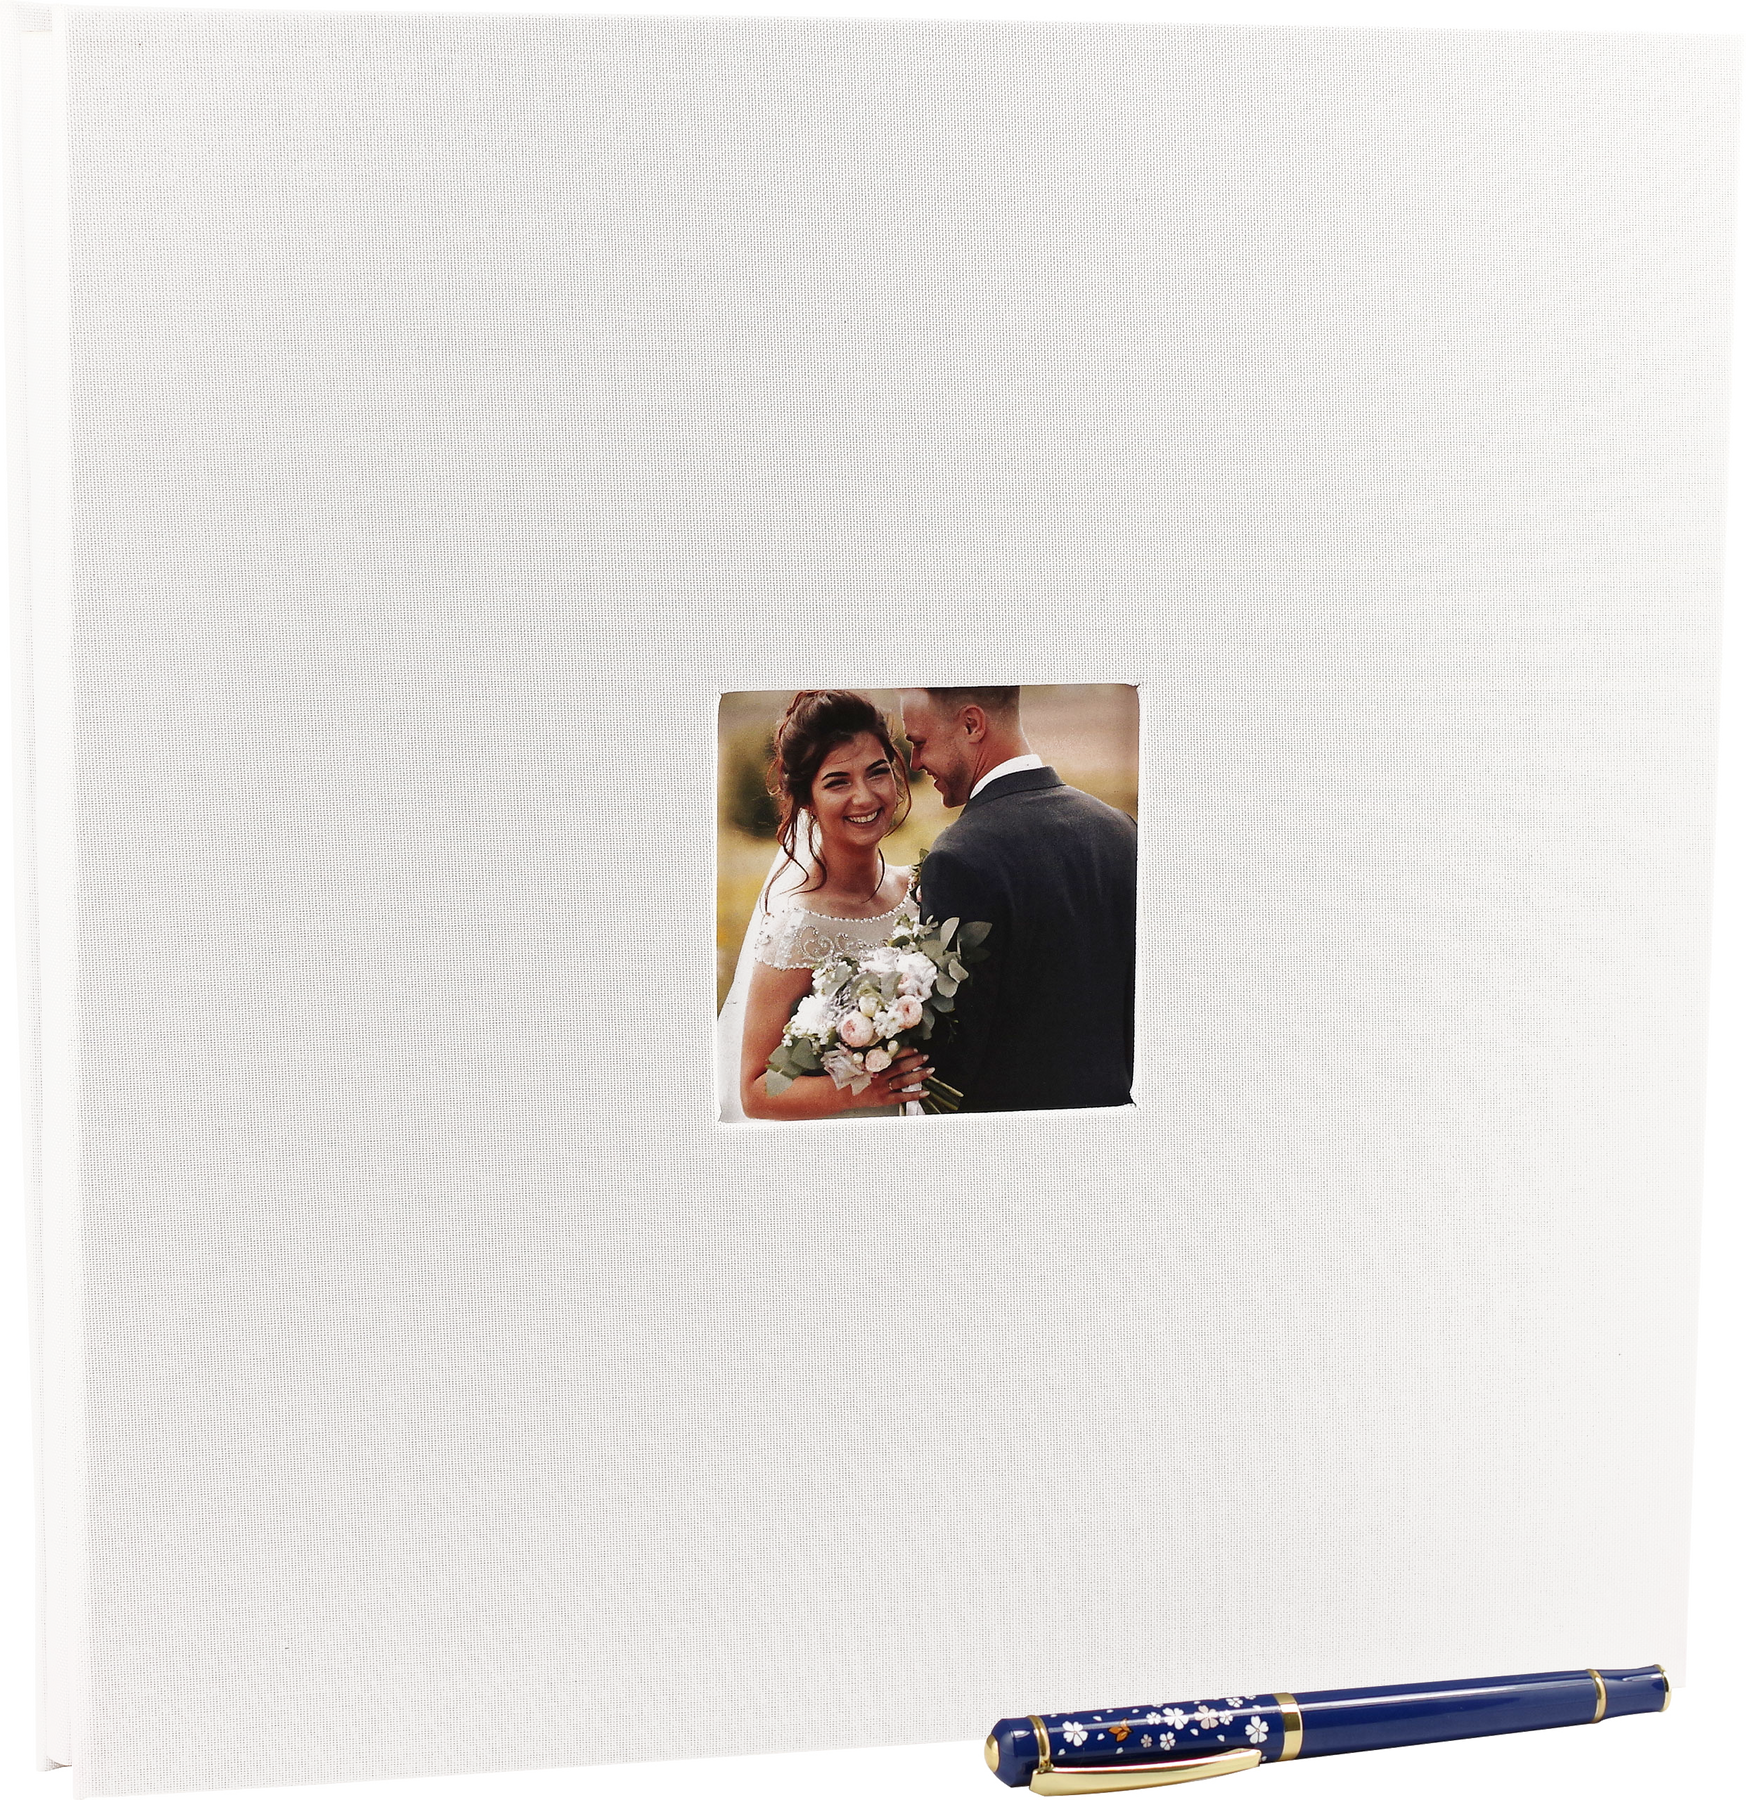 Black Linen Photo Album (40 Self-Adhesive Pages) – Peter Pauper Press